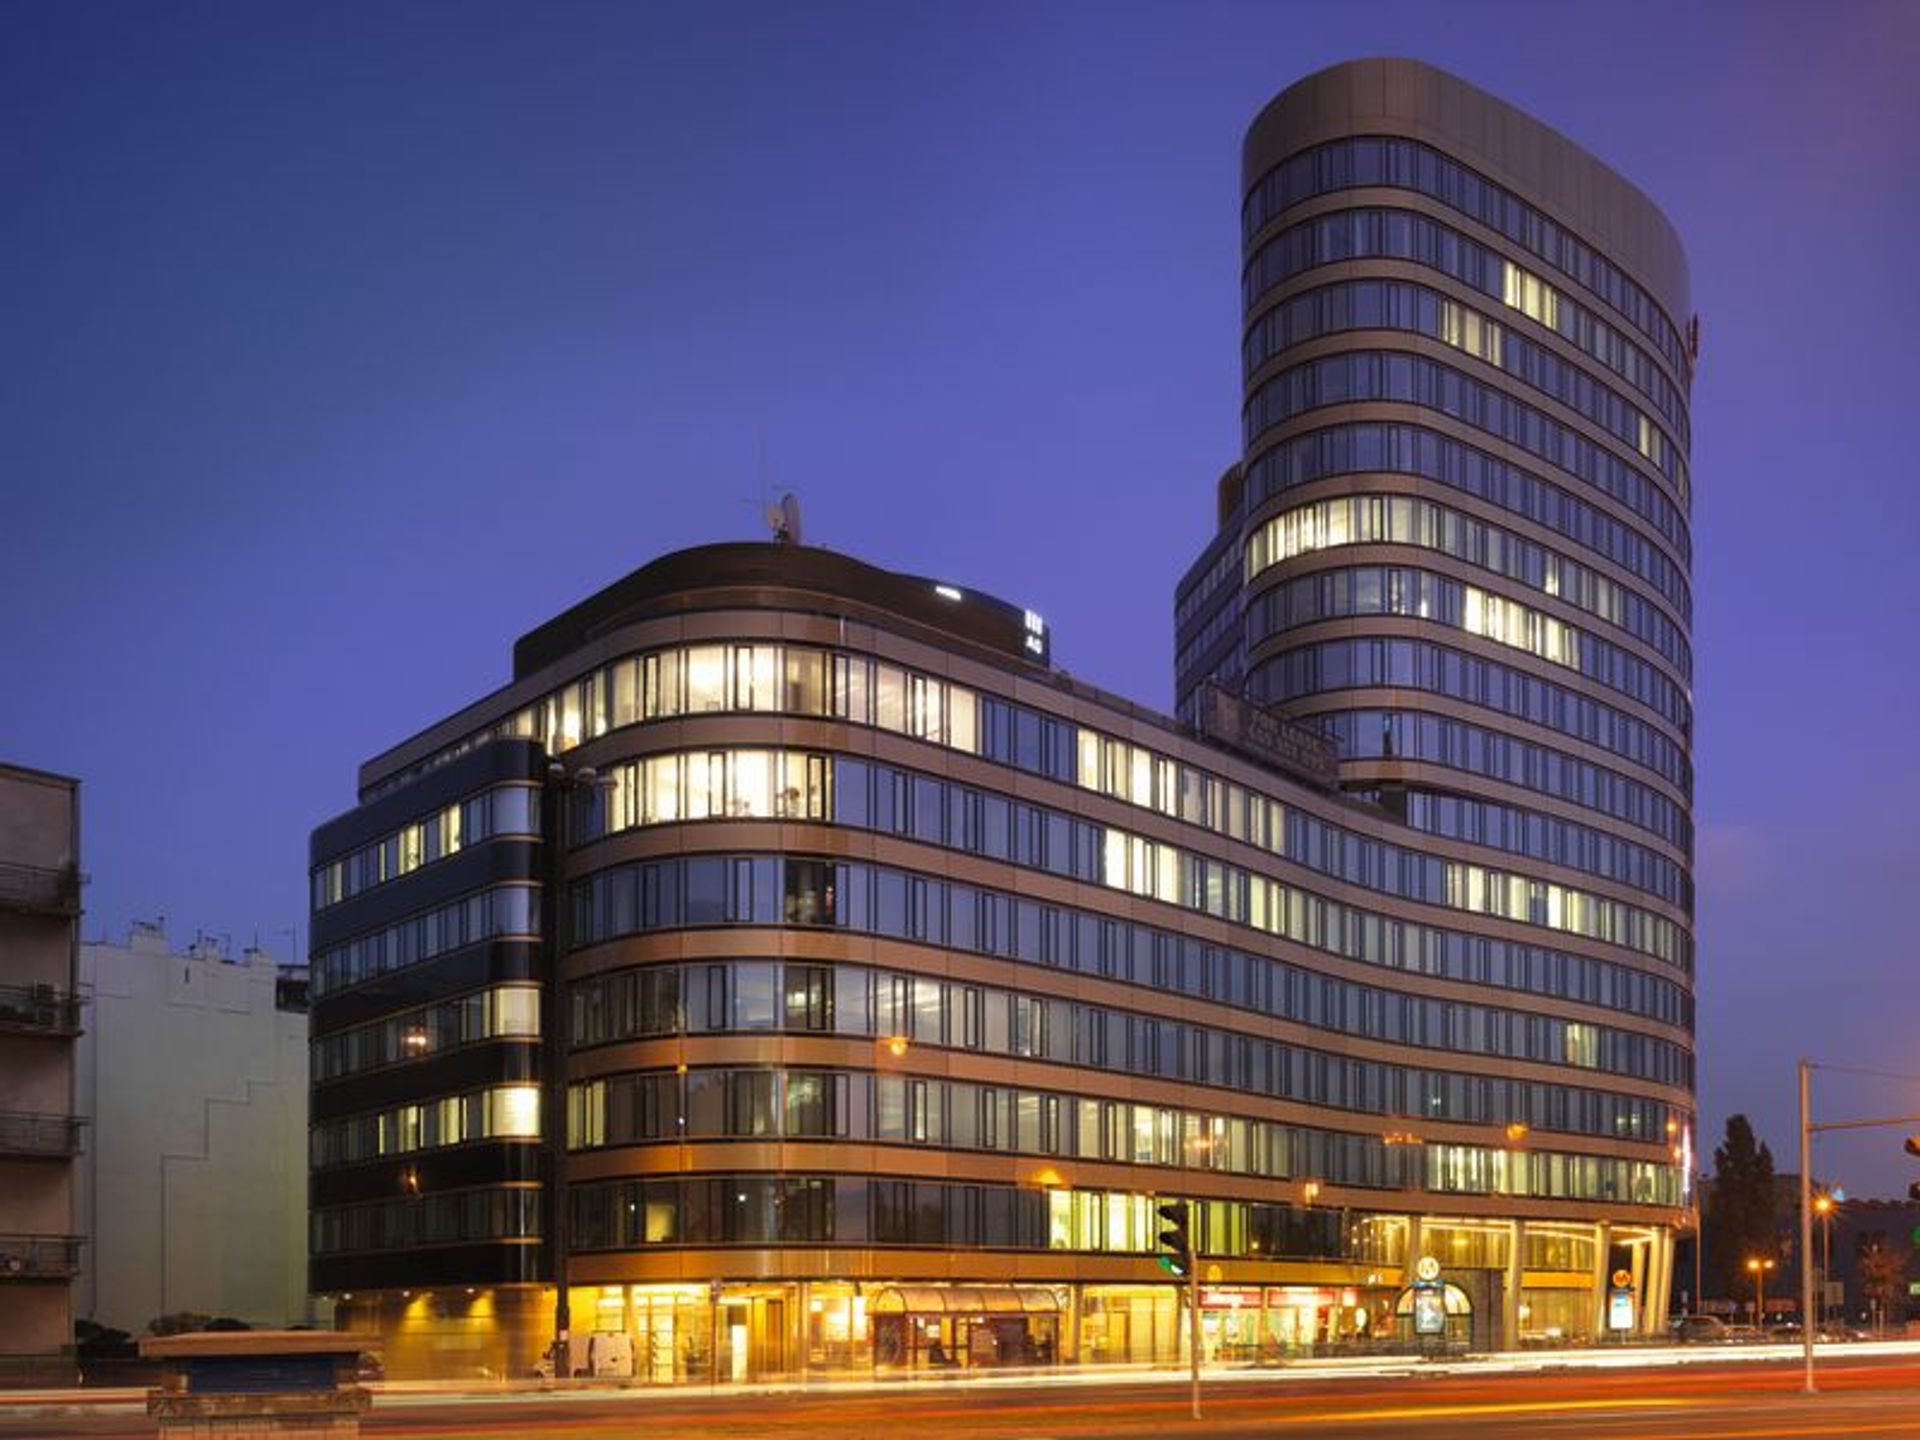  Firma doradcza ma nowe biuro w Zebra Tower w Warszawie